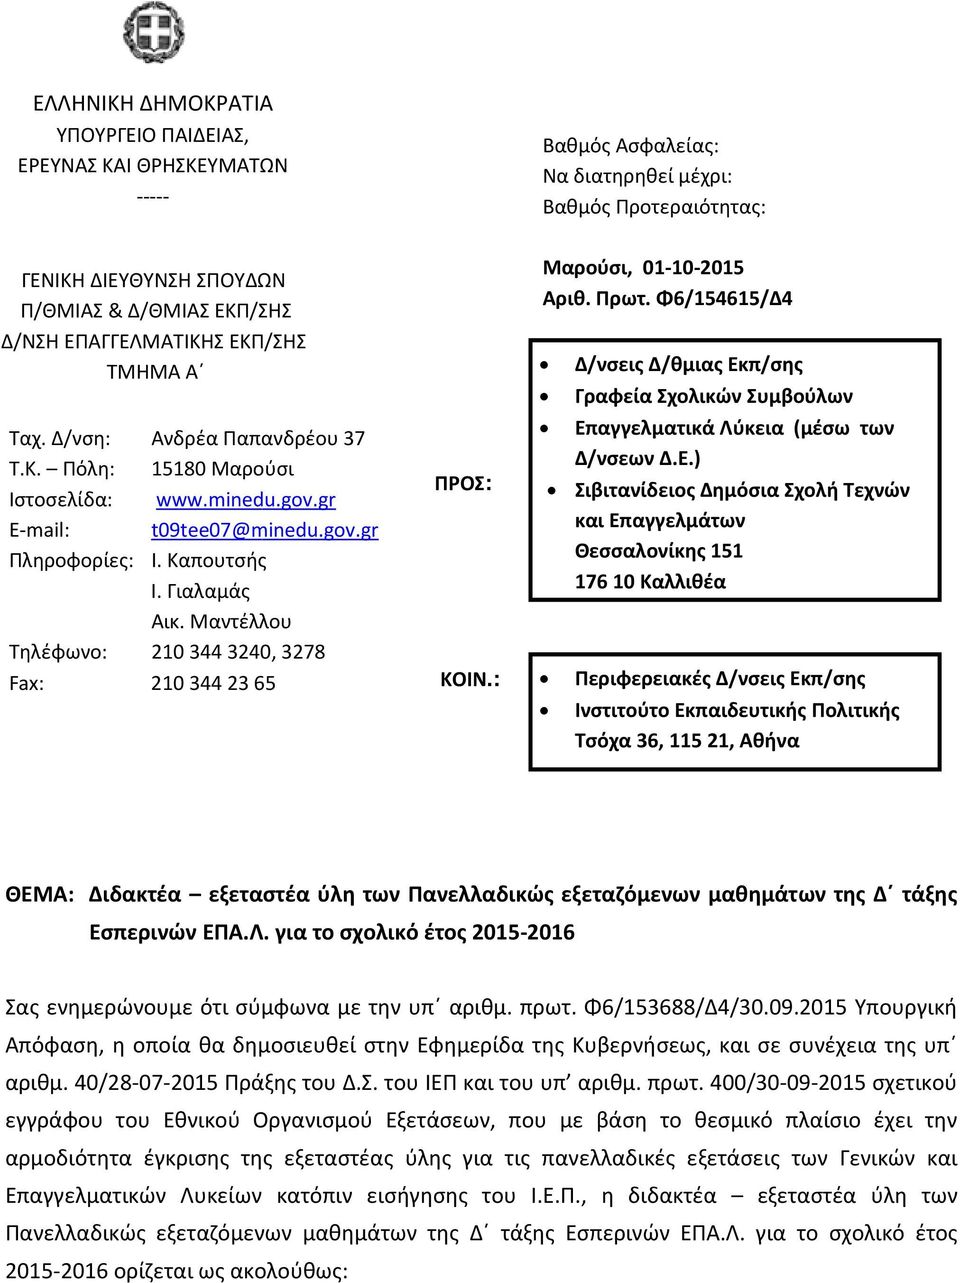 Δ/νση: Ανδρέα Παπανδρέου 37 Επαγγελματικά Λύκεια (μέσω των Τ.Κ. Πόλη: 15180 Μαρούσι Δ/νσεων Δ.Ε.) ΠΡΟΣ: Ιστοσελίδα: www.minedu.gov.gr Σιβιτανίδειος Δημόσια Σχολή Τεχνών E-mail: t09tee07@minedu.gov.gr και Επαγγελμάτων Πληροφορίες: Ι.